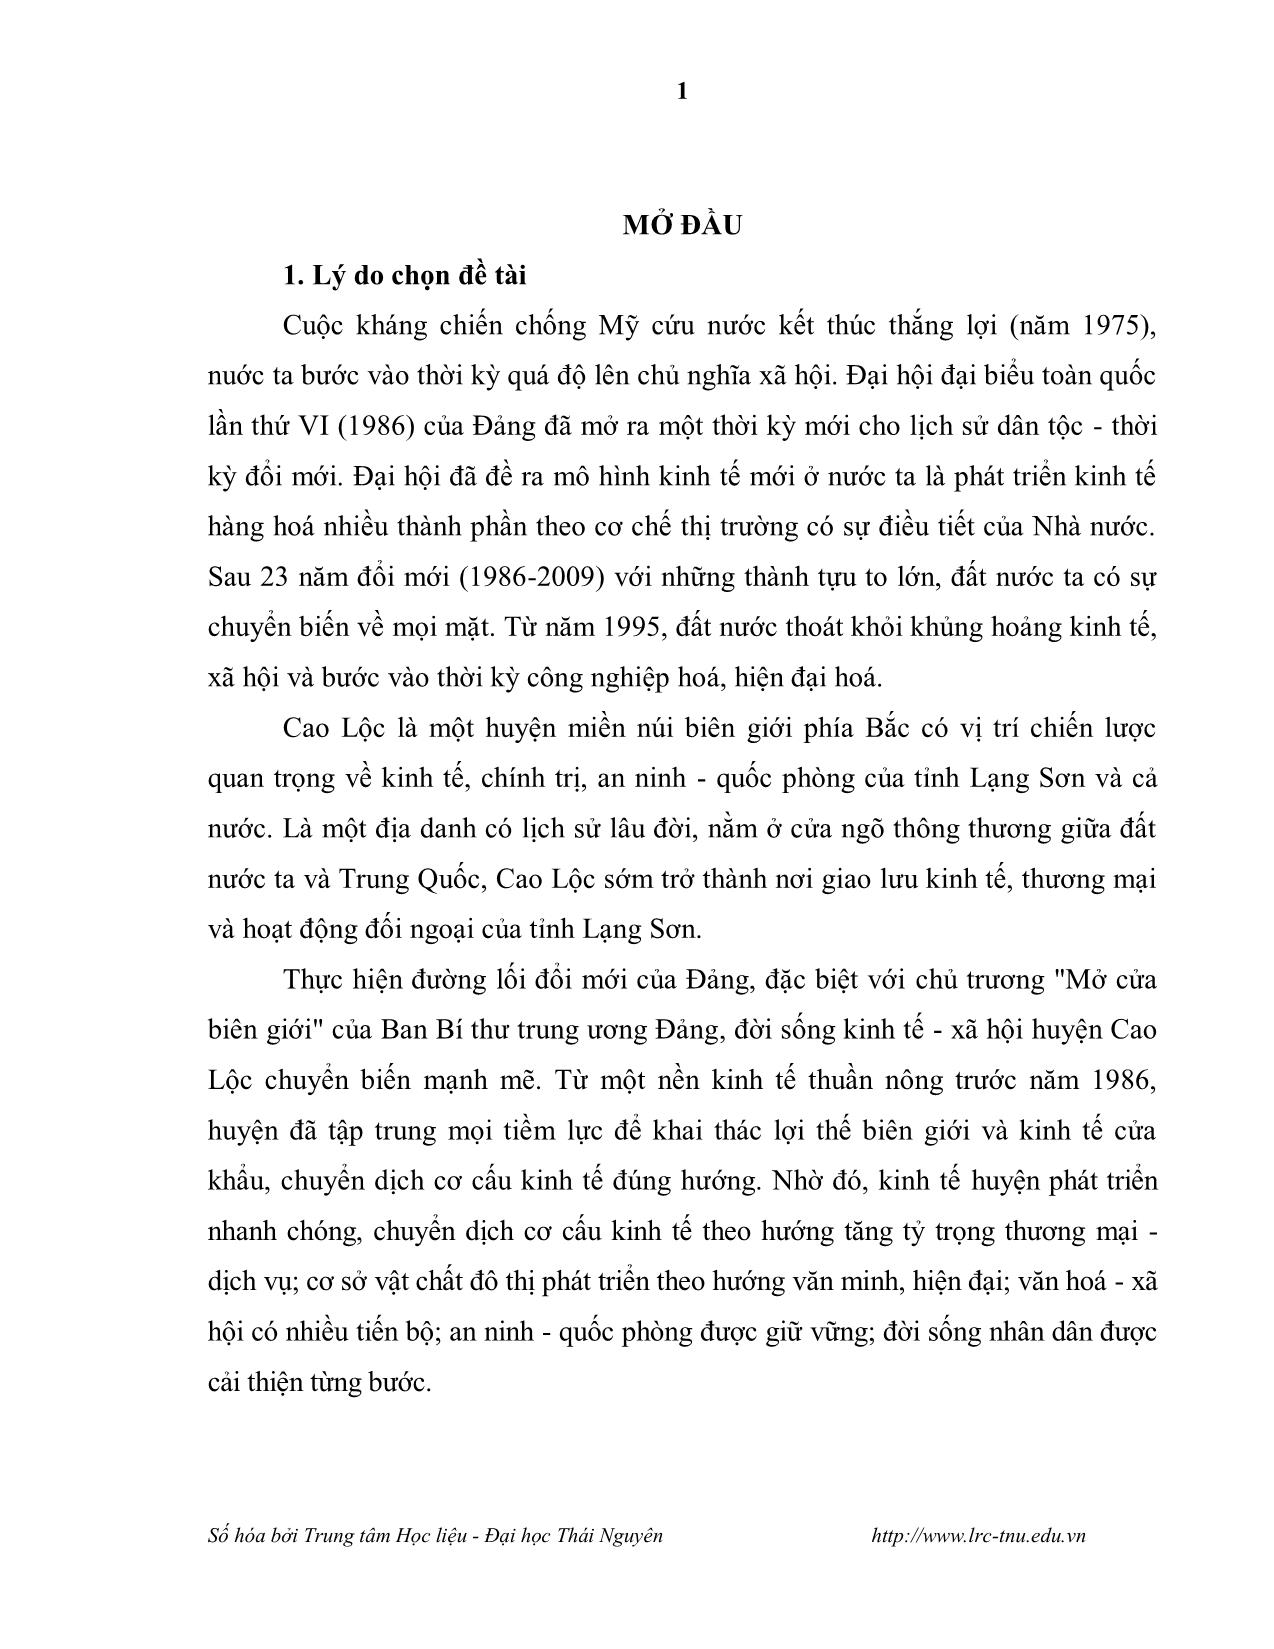 Luận văn Kinh tế - Xã hội huyện Cao Lộc, tỉnh Lạng Sơn trong thời kỳ đổi mới (1986-2009) trang 5